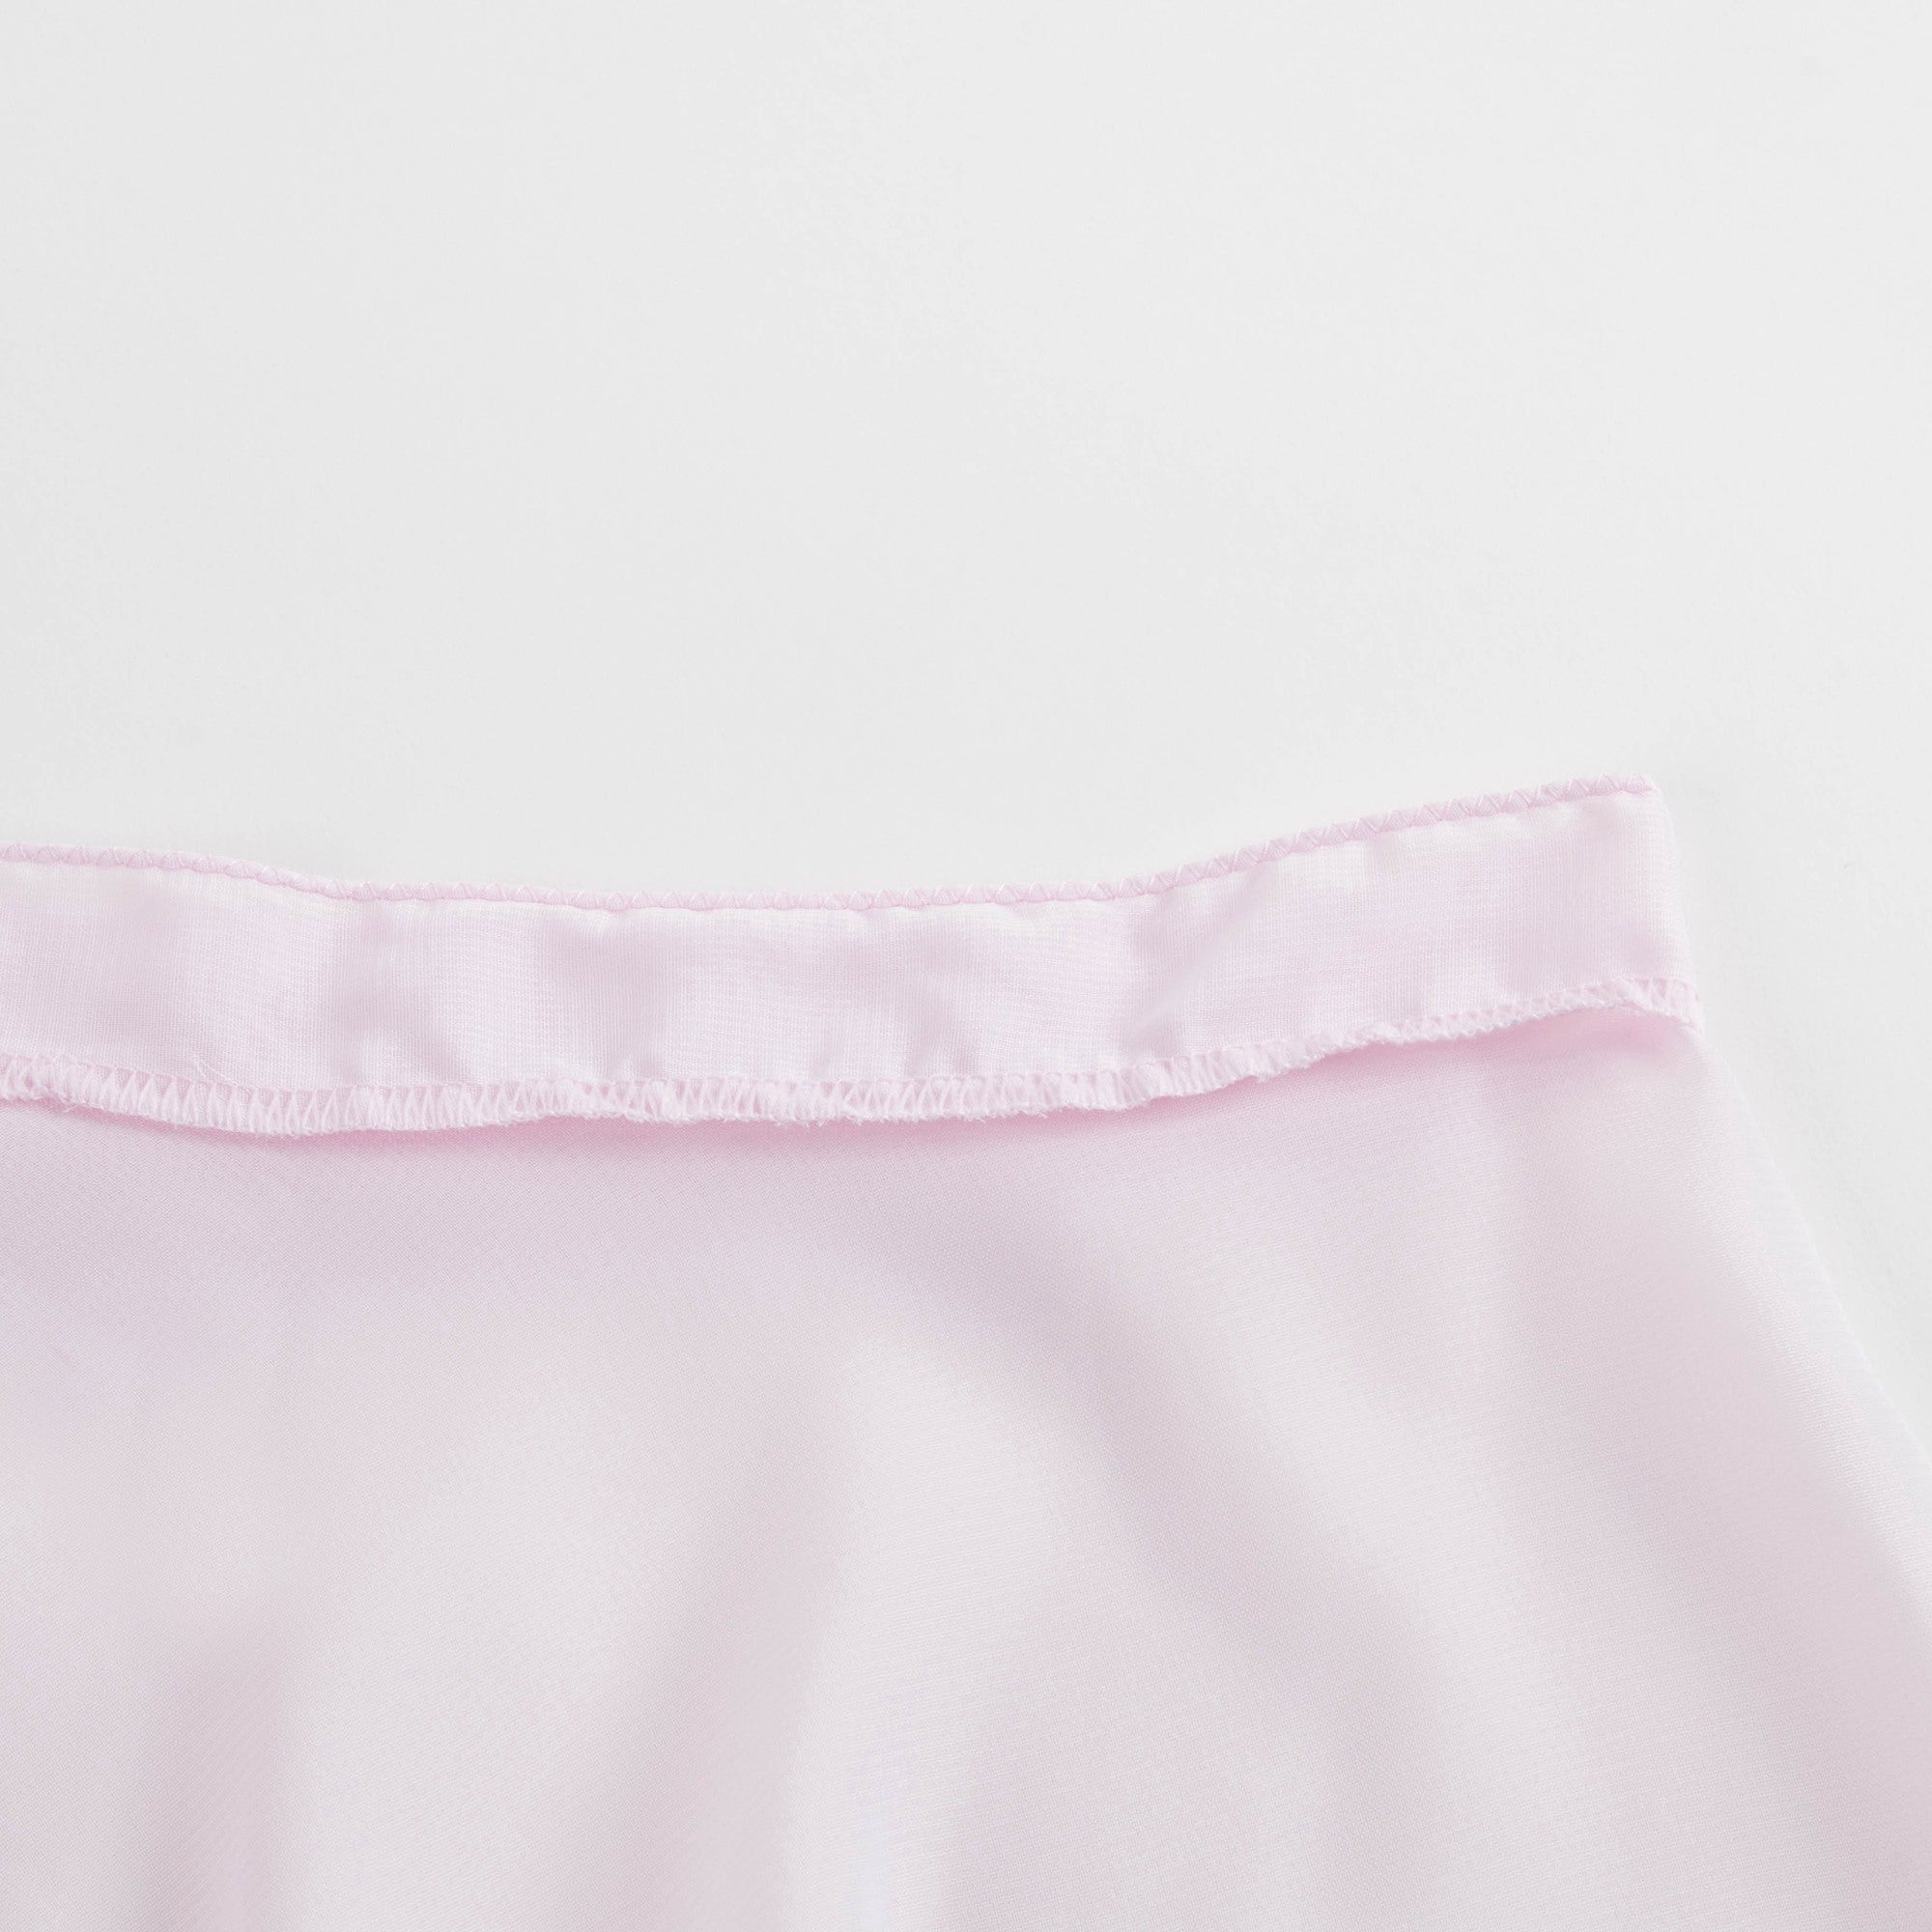 Girls Light Pink Skirt